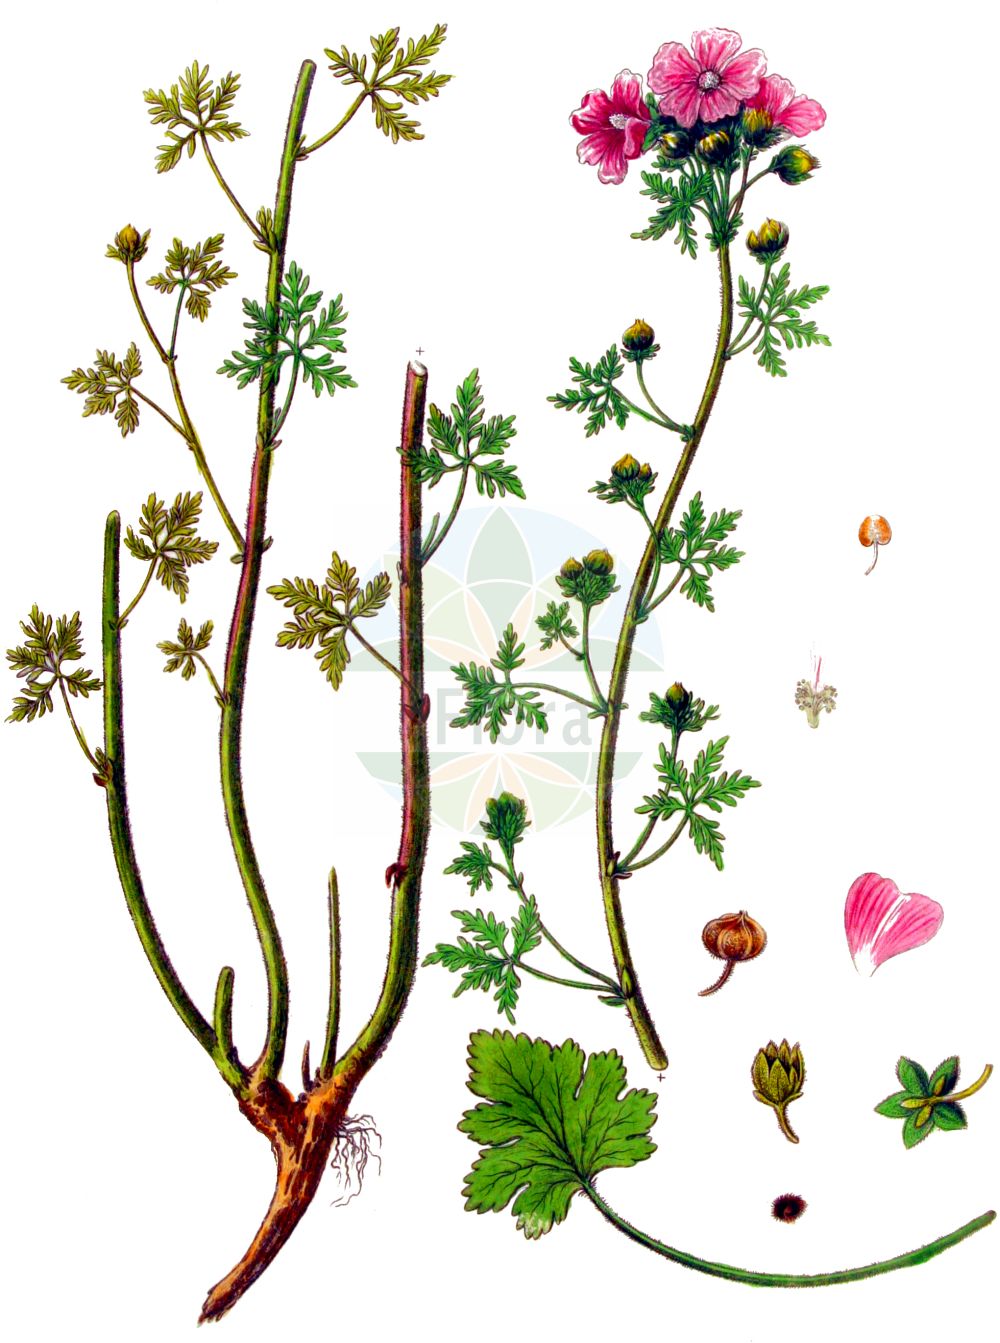 Historische Abbildung von Malva moschata (Moschus-Malve - Musk-mallow). Das Bild zeigt Blatt, Bluete, Frucht und Same. ---- Historical Drawing of Malva moschata (Moschus-Malve - Musk-mallow). The image is showing leaf, flower, fruit and seed.(Malva moschata,Moschus-Malve,Musk-mallow,Bismalva moschata,Malva geraniifolia,Malva laciniata,Malva moschata,Moschus-Malve,Musk-mallow,Malva,Malve,Mallow,Malvaceae,Malvengewächse,Mallow family,Blatt,Bluete,Frucht,Same,leaf,flower,fruit,seed,Kops (1800-1934))